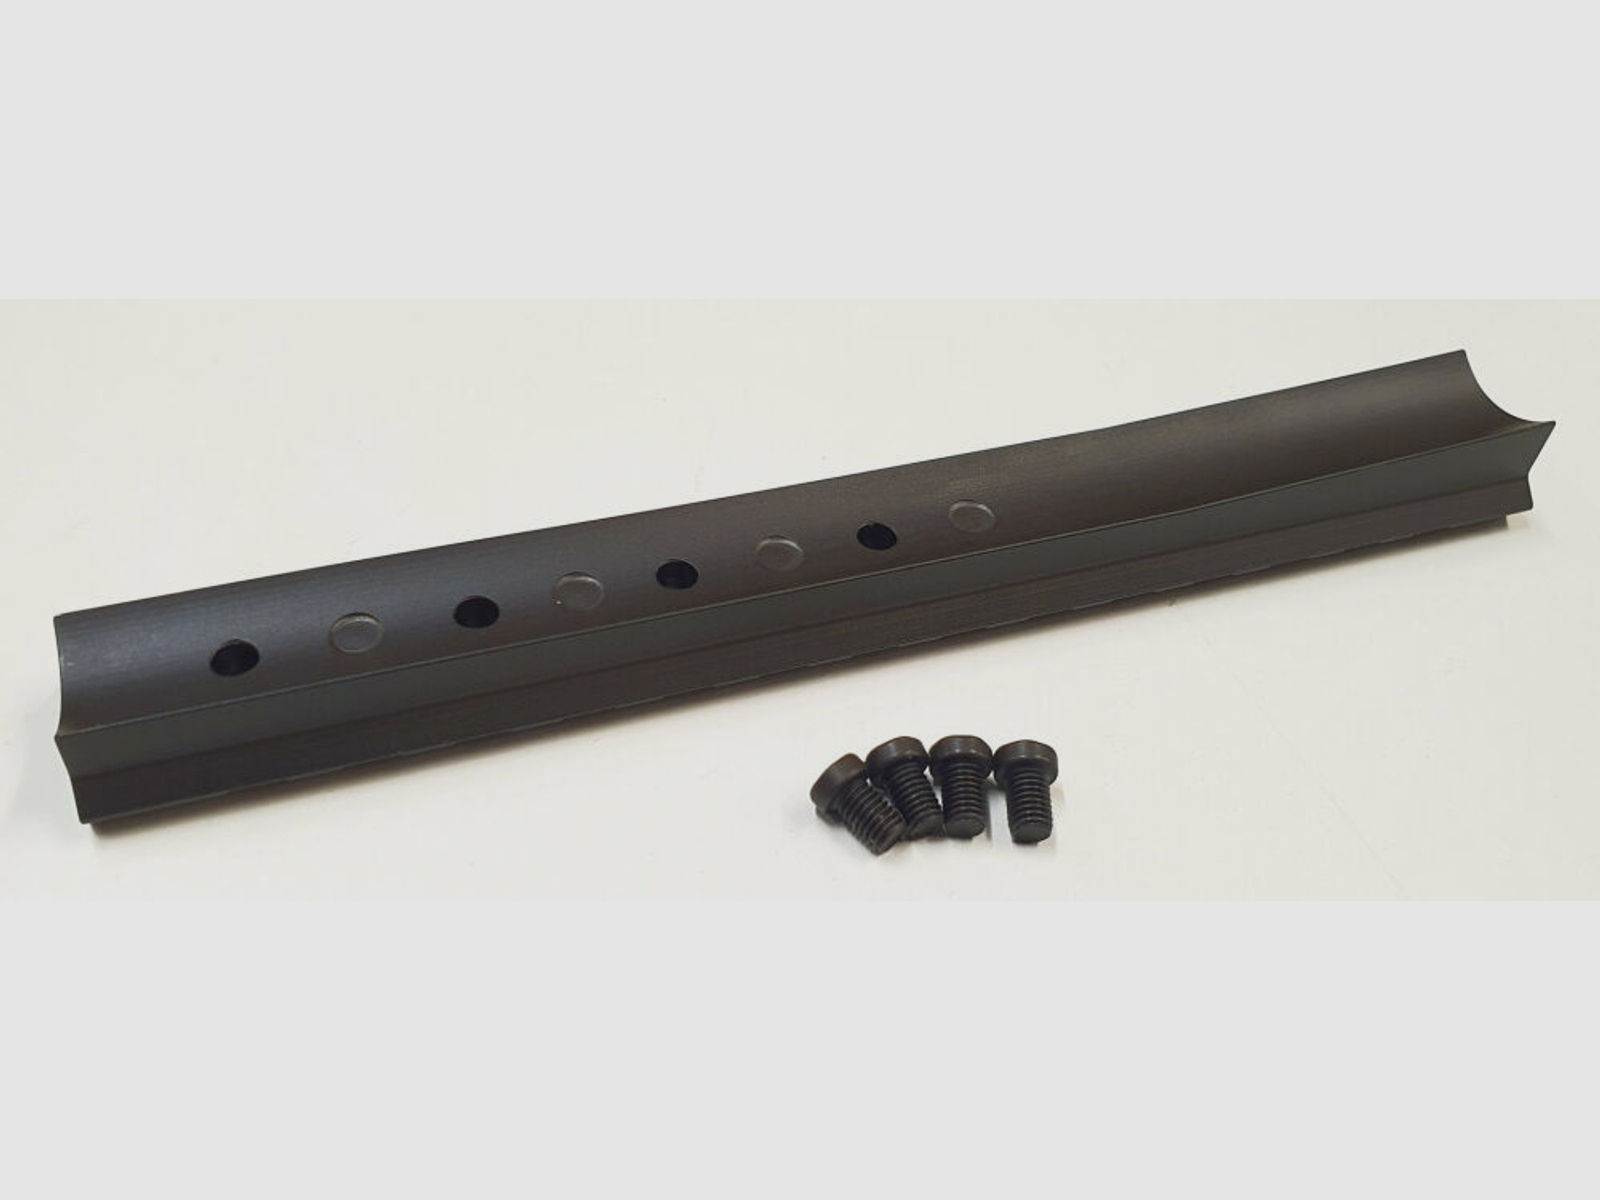 RHS	 RHS Picatinny Schiene für BERGARA BA 13 ,Stahl, schwarz matt brüniert , 160mm kurz, Made in Germany